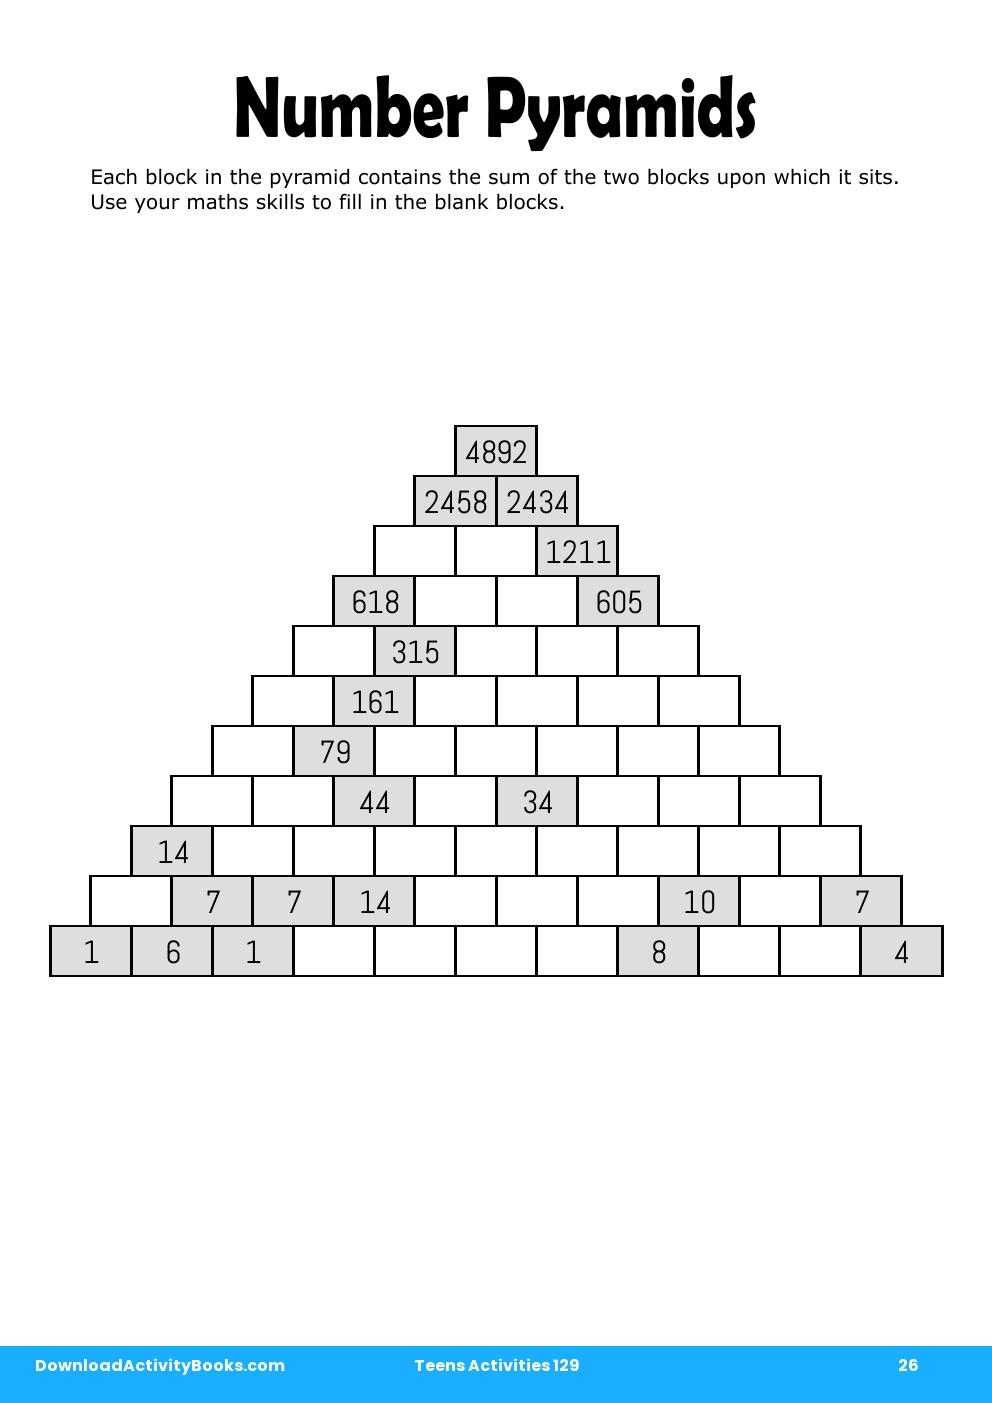 Number Pyramids in Teens Activities 129